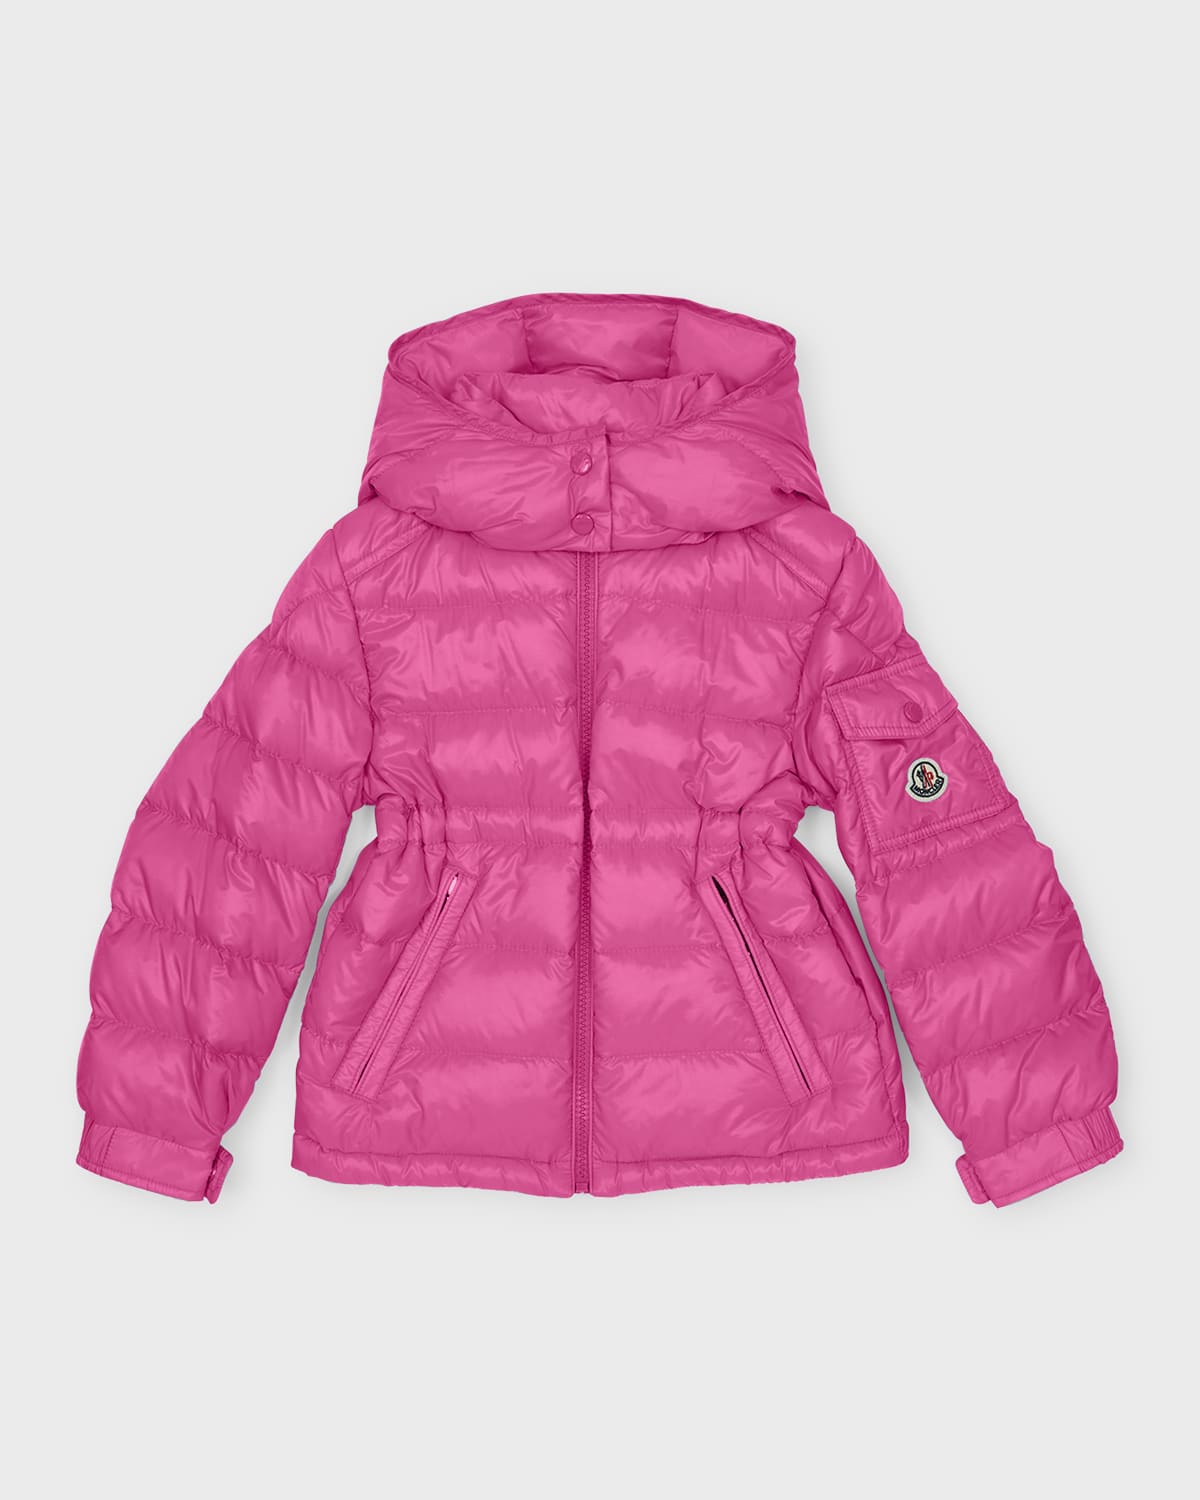 Moncler Kids' Girl's Dalles Long Season Puffer Down Jacket In Pink Damage